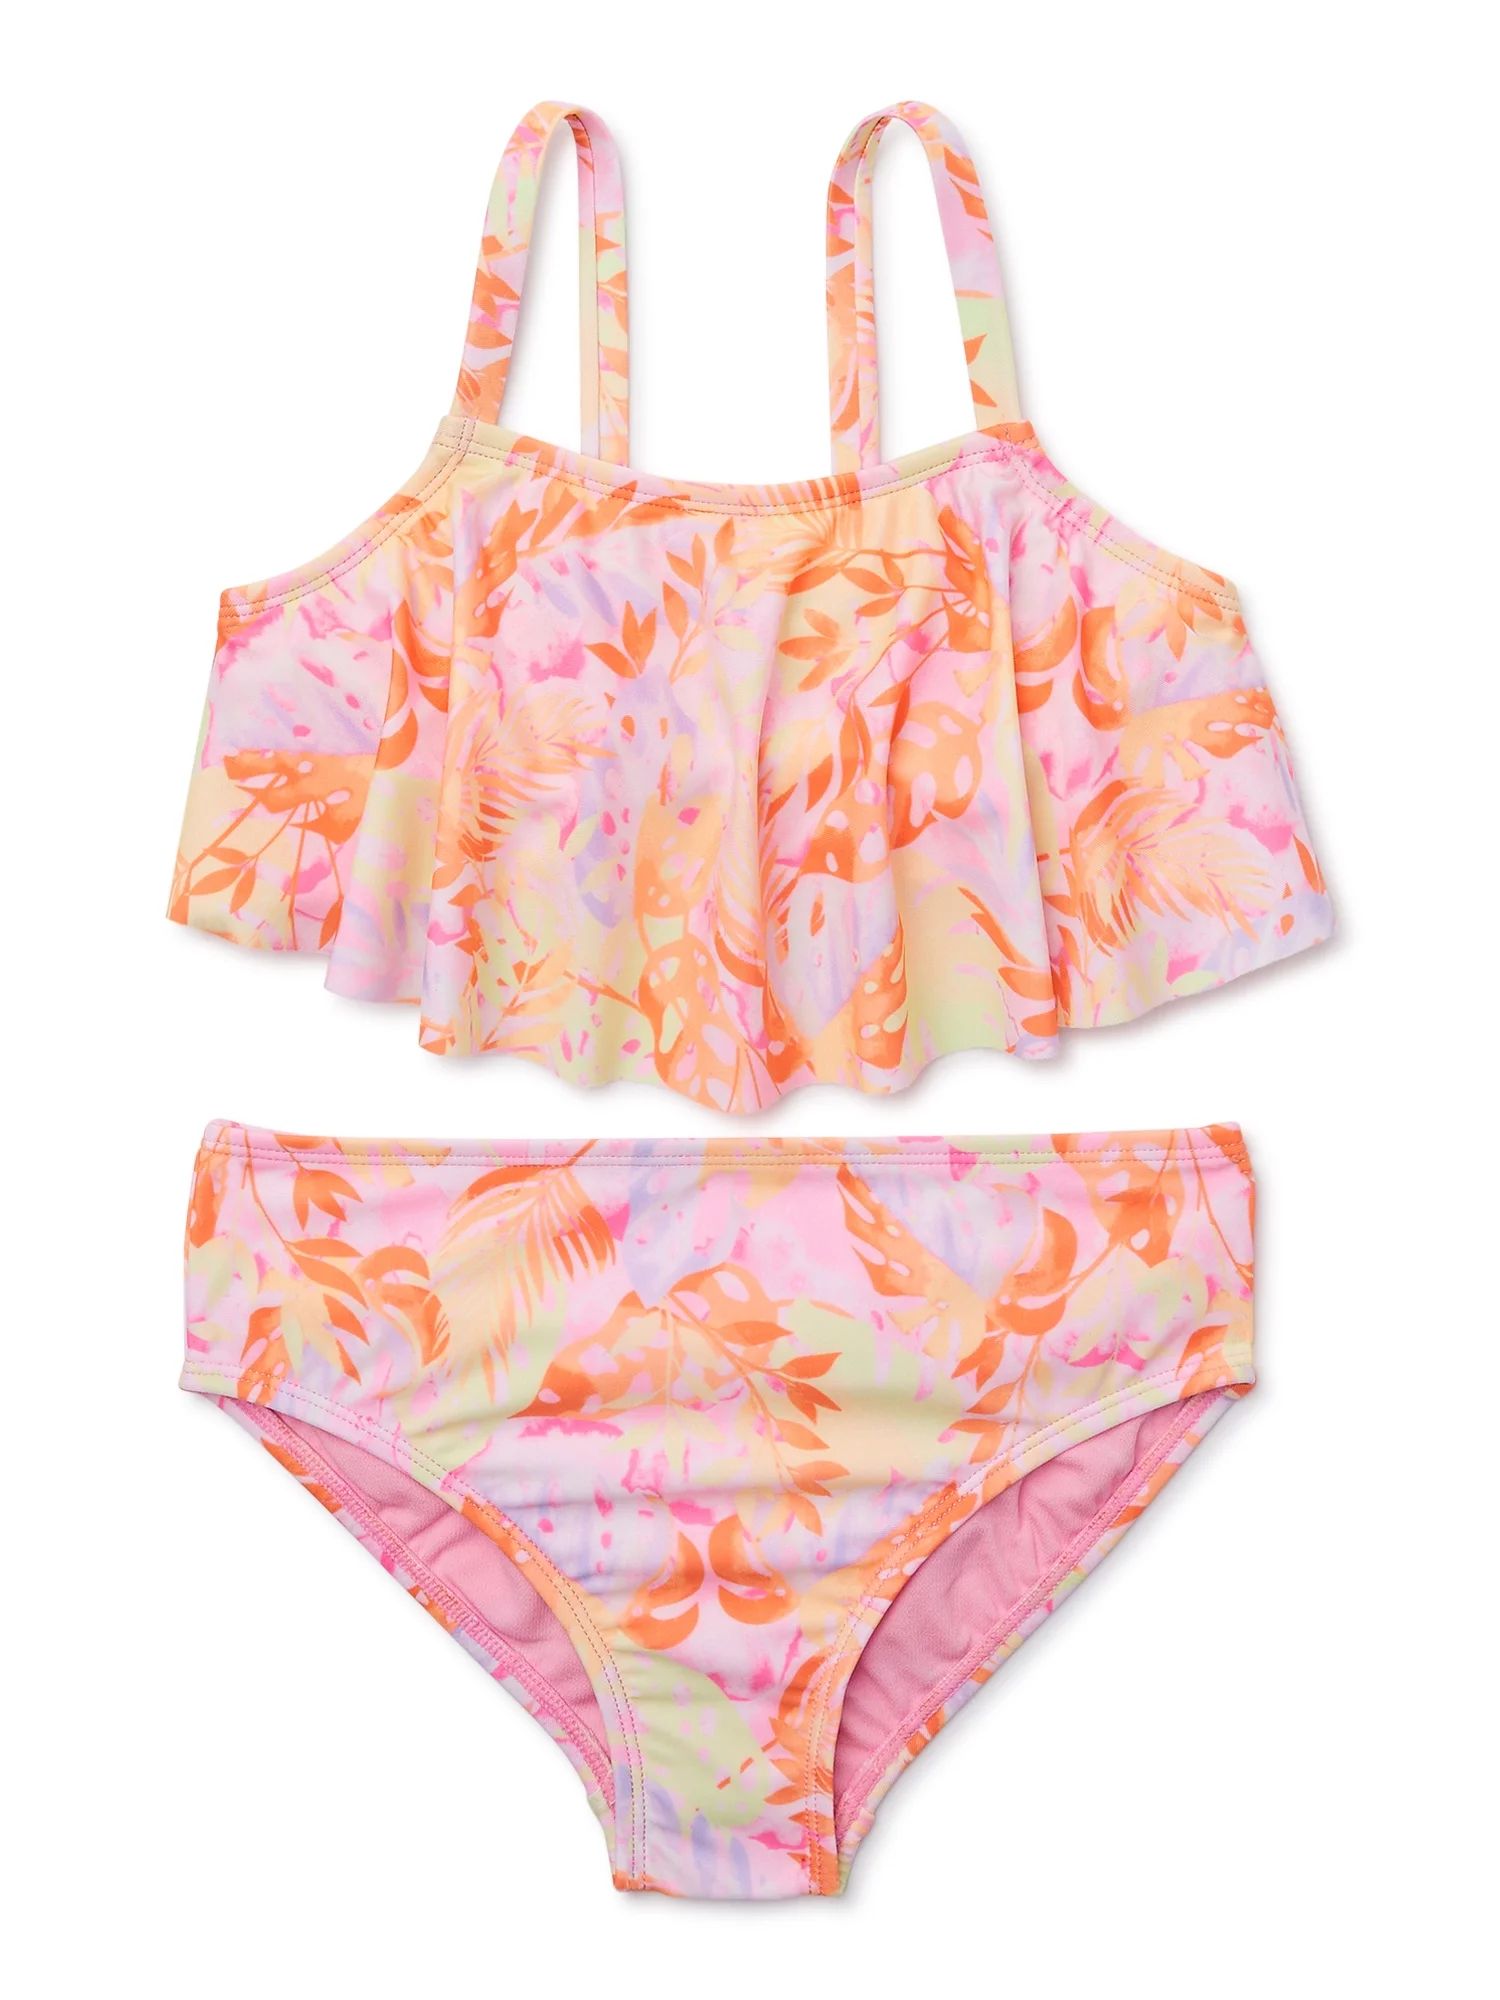 Wonder Nation Girls Ruffle Bikini Swimsuit with UPF 50, 2-Piece, Sizes 4-18 | Walmart (US)